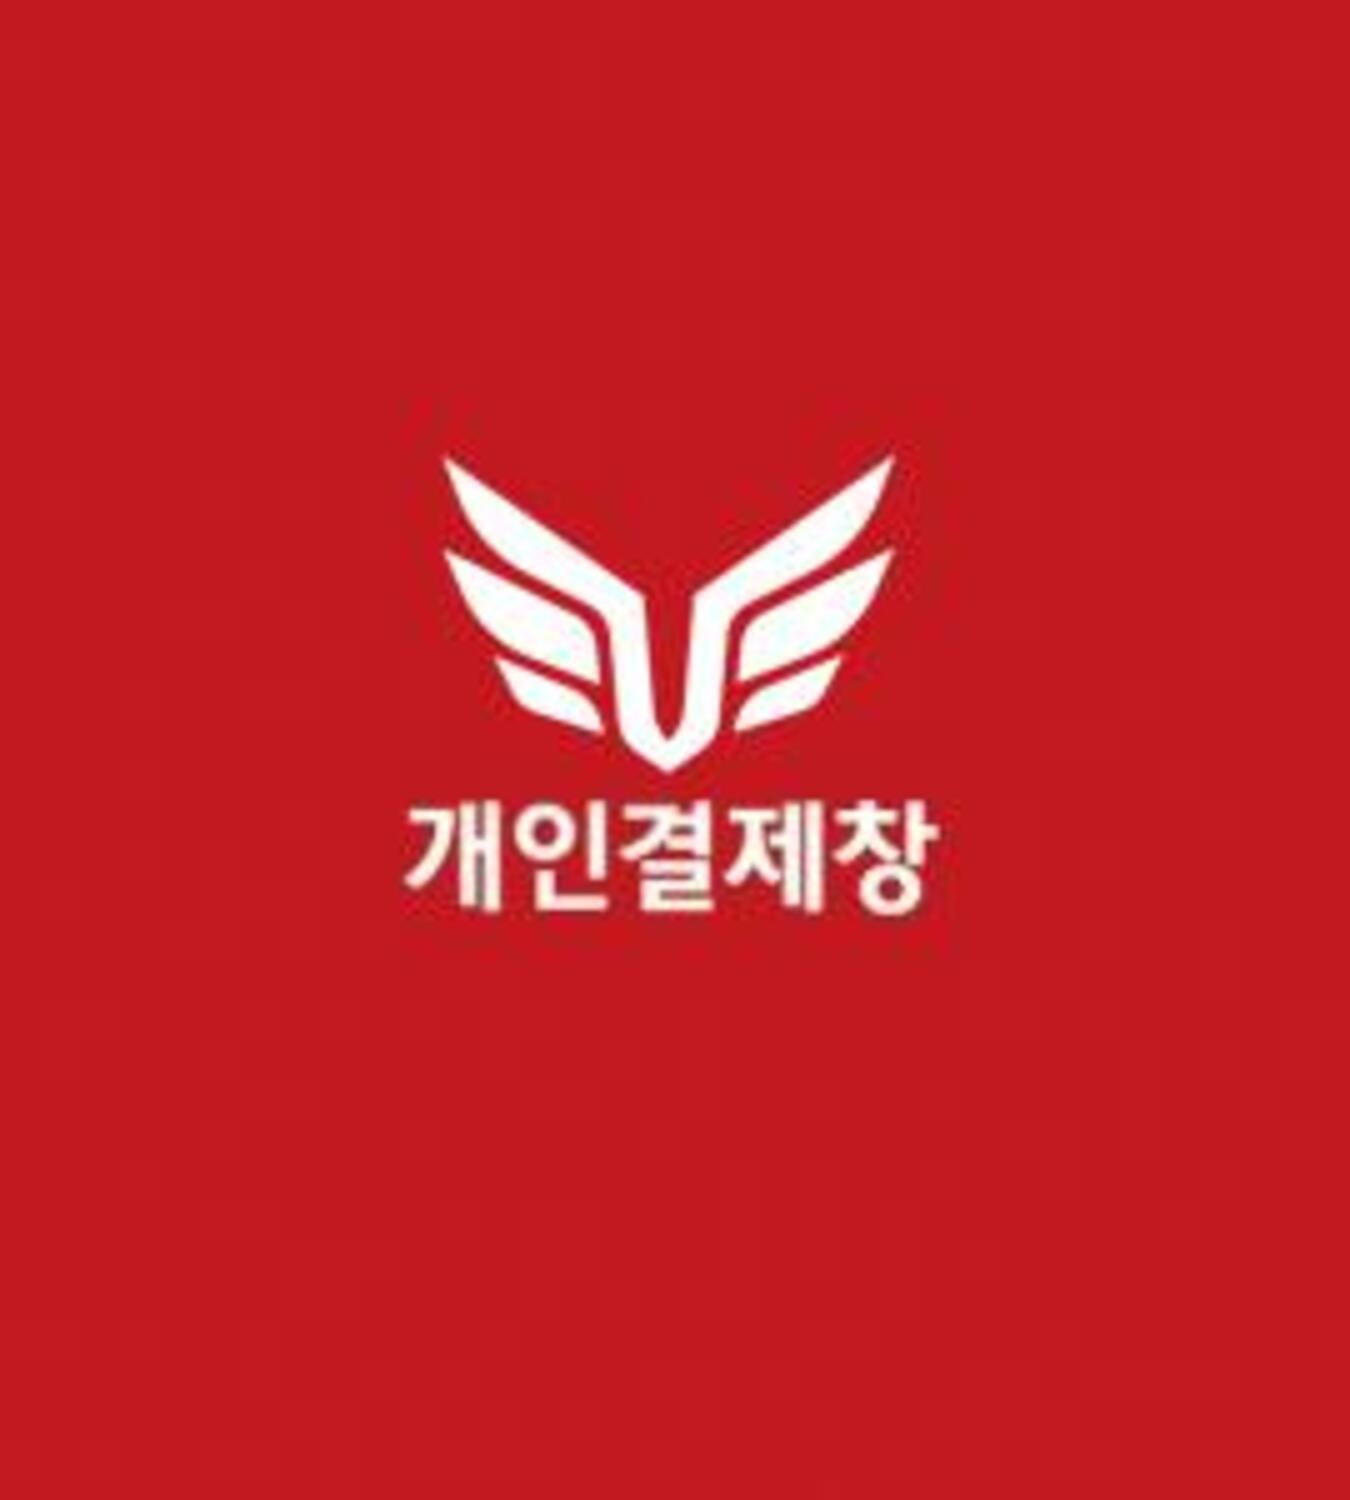 ★인천관광공사 최예주 고객님 개인결제창★